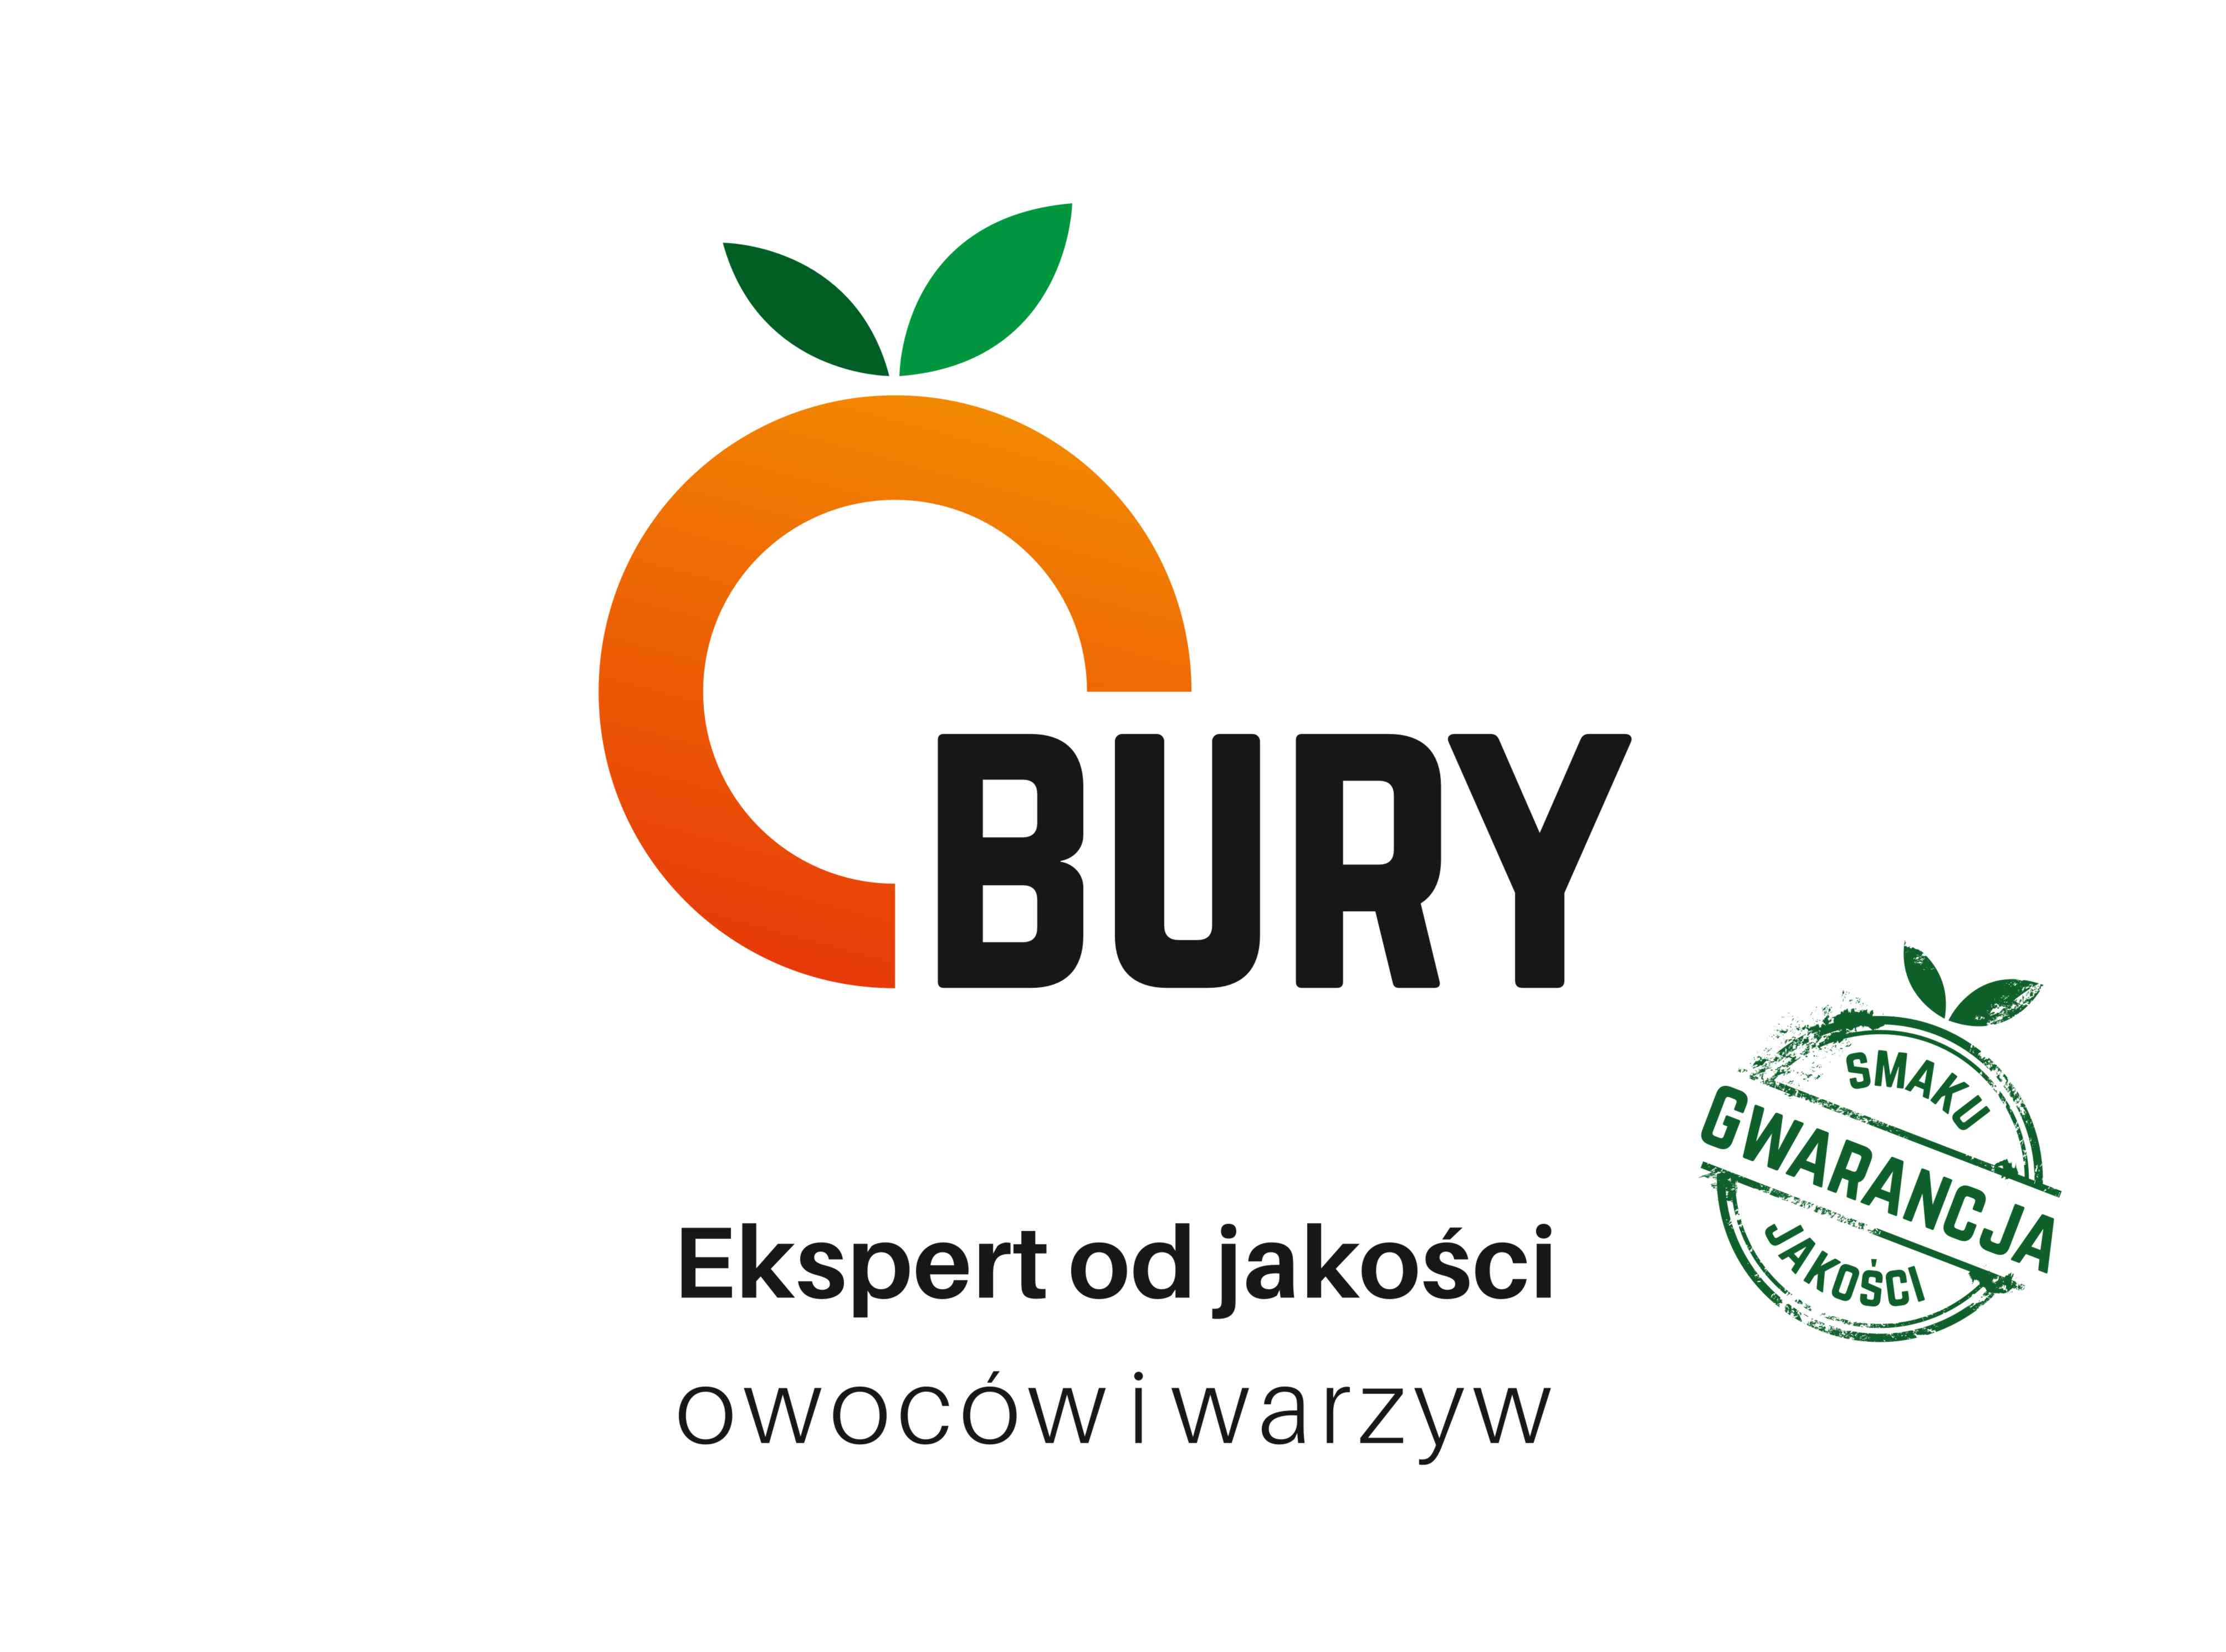 banerek Bury Ekspert od jakości owocó i warzyw oraz gwar smaku i jakości